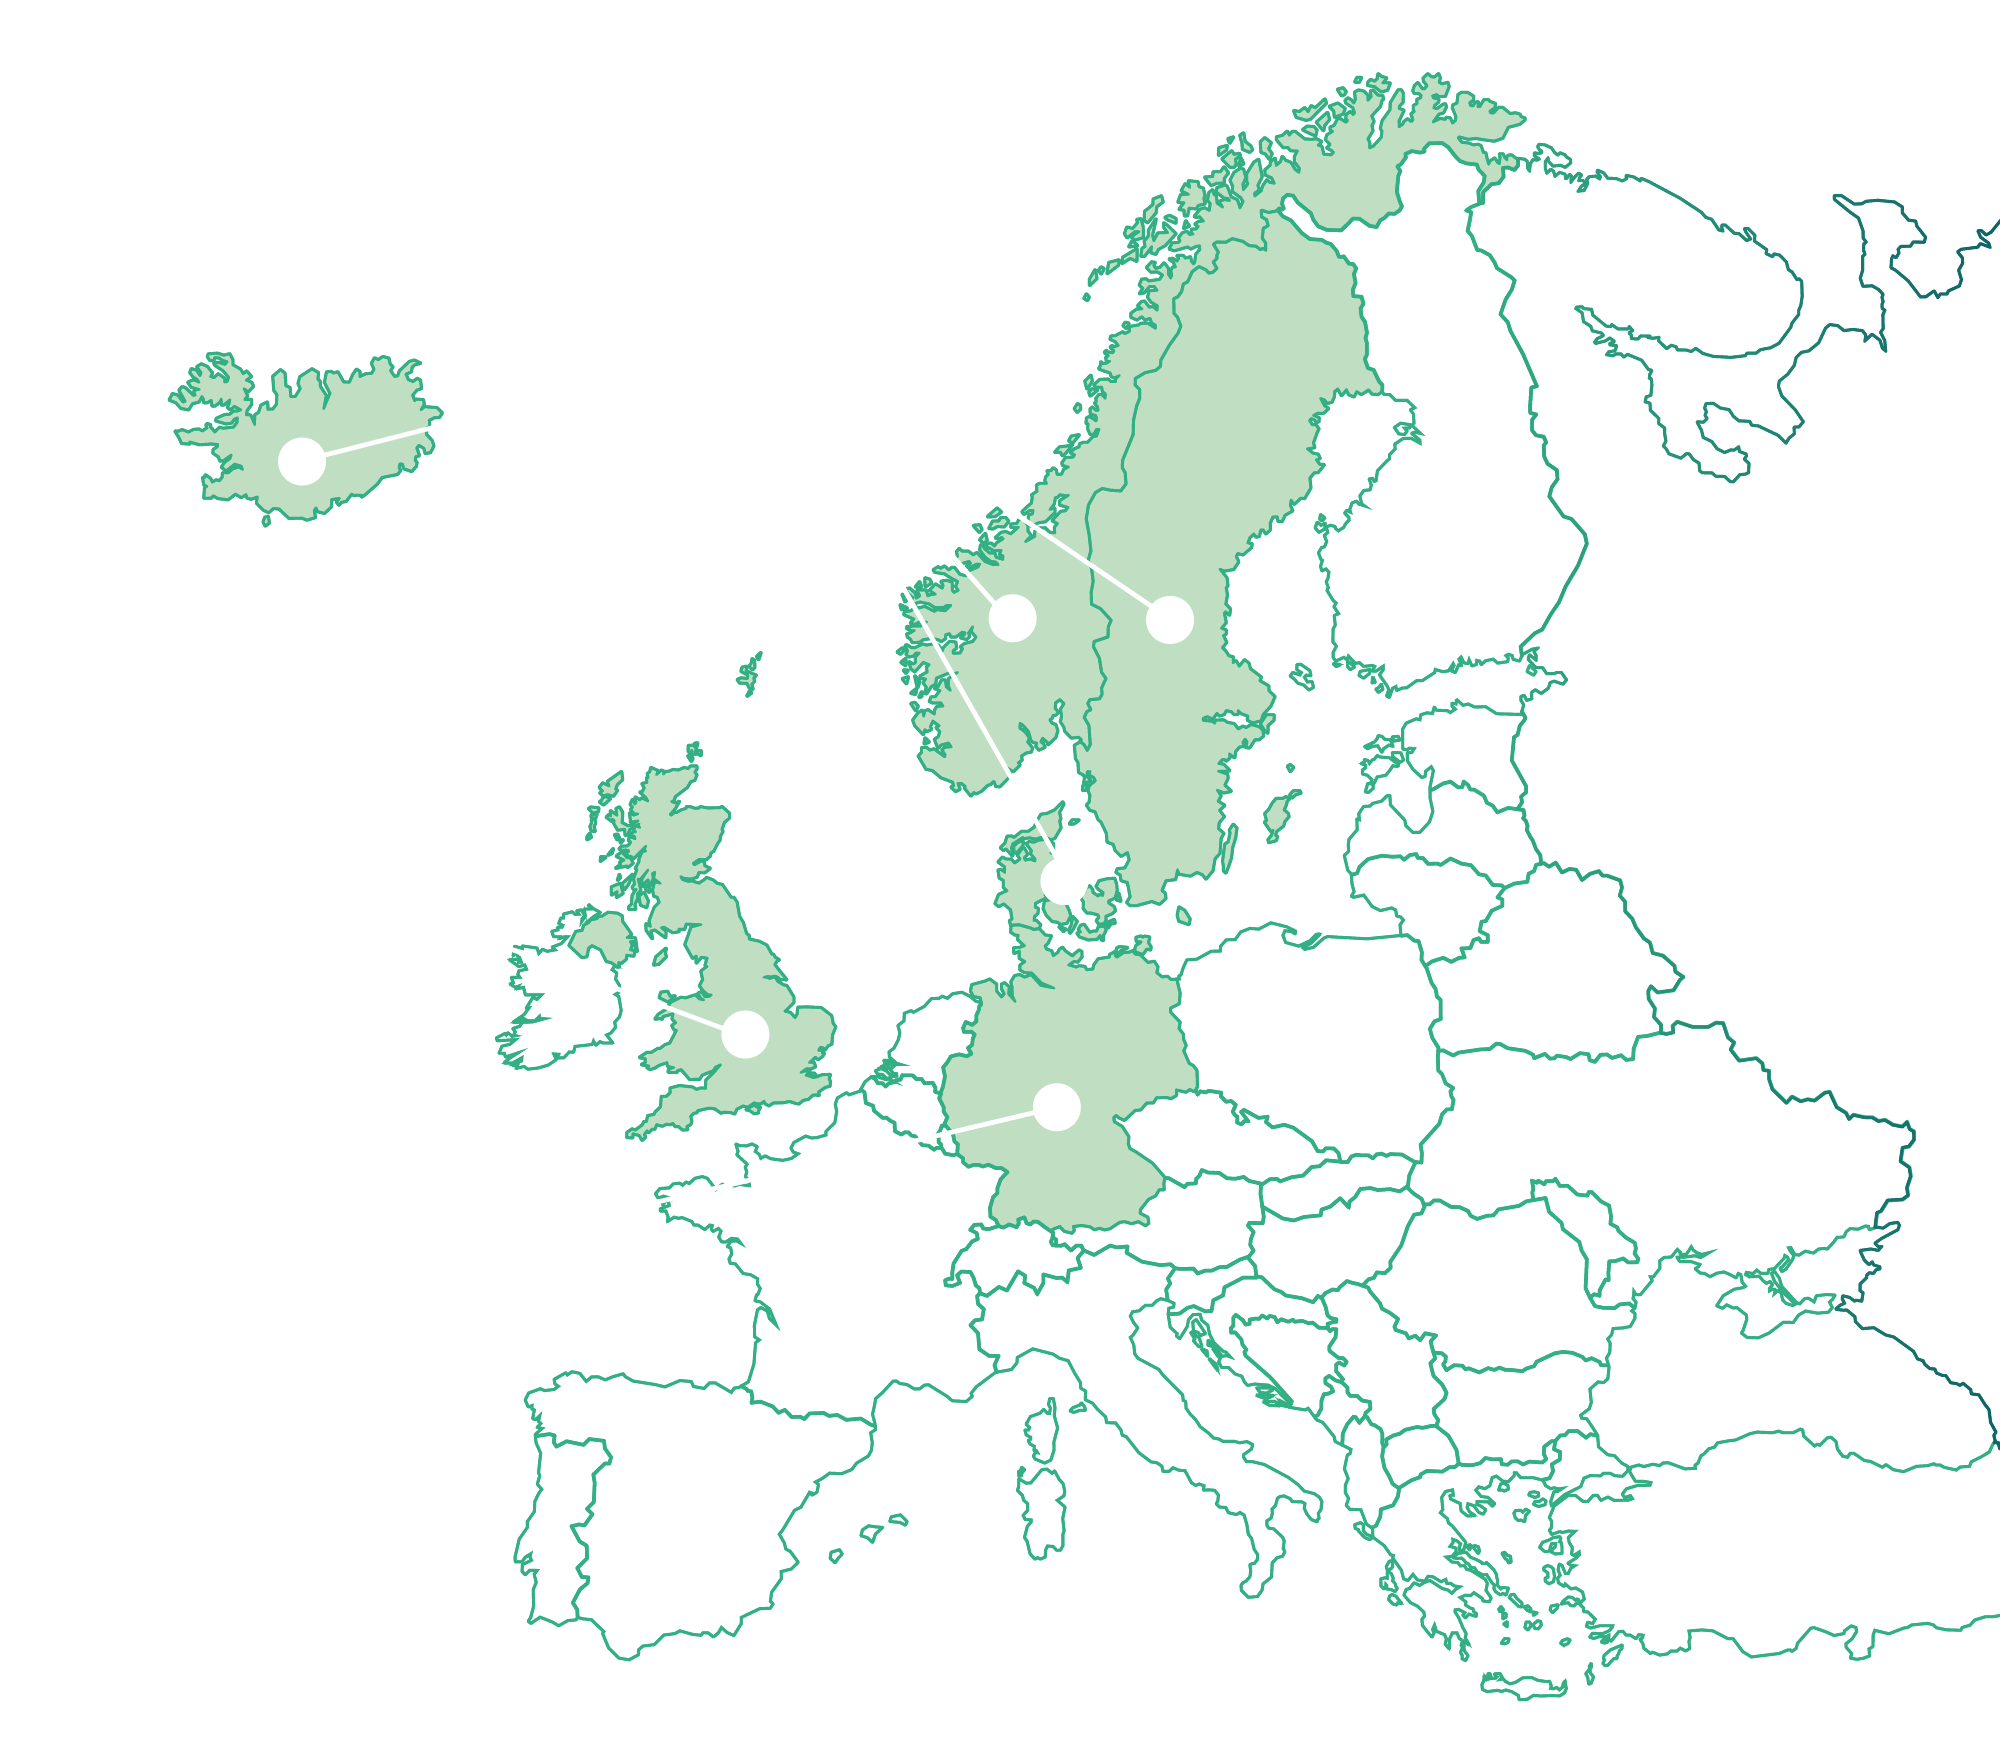 Karta över Europa. Sverige, Norge, Danmark och Island är grönmarkerade och pilar går till dem från texten Melatonin AGB. Tyskland är grönmarkerat och en pil med texten pinealin går dit. Storbrittannien är grönmarkerat och en pil med texten adaflex går dit.